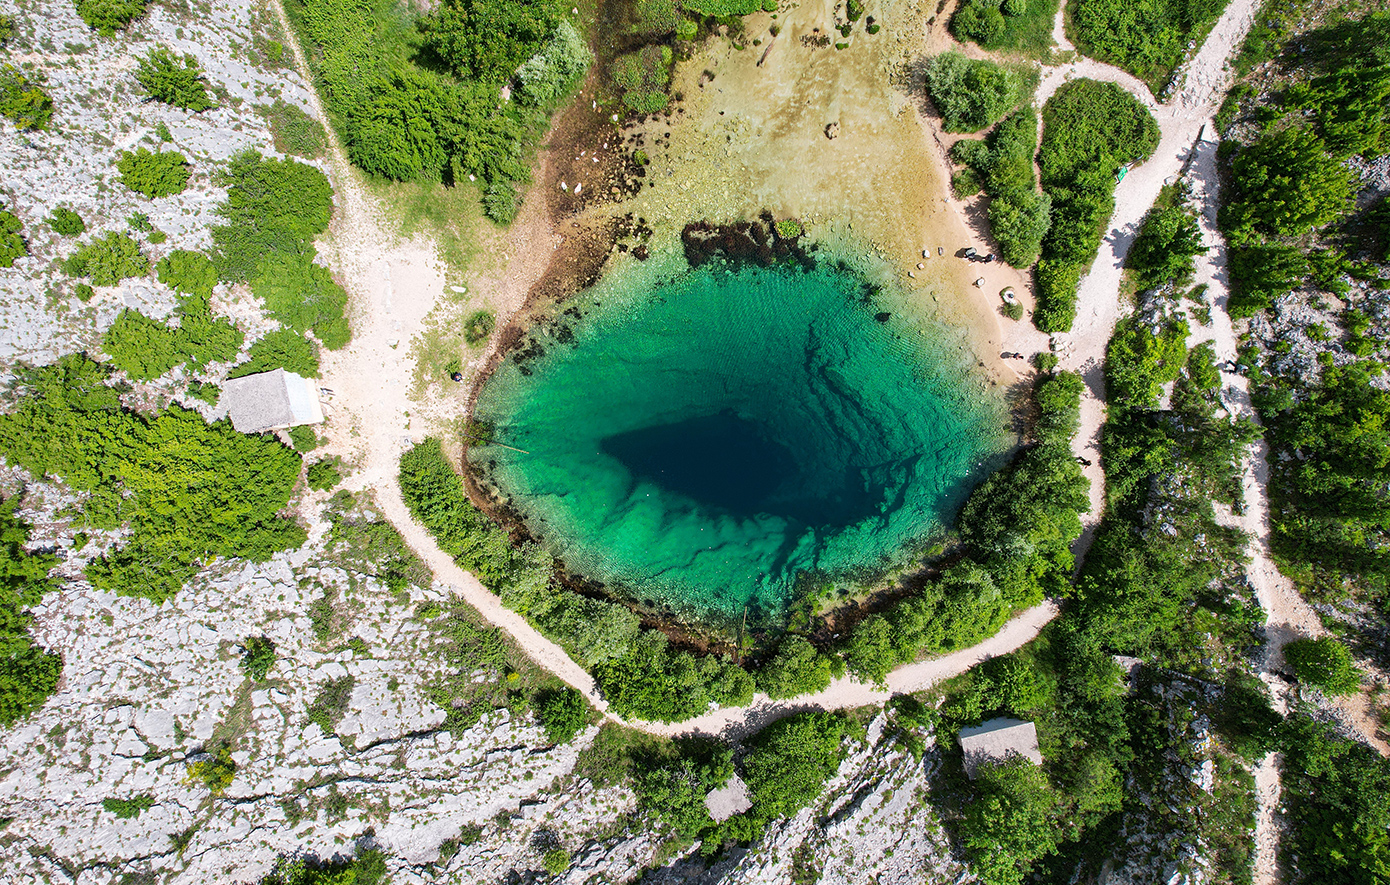 Το «Μάτι της Γης» βρίσκεται στην Κροατία και είναι τόσο απόκοσμο, όσο φαντάζεστε